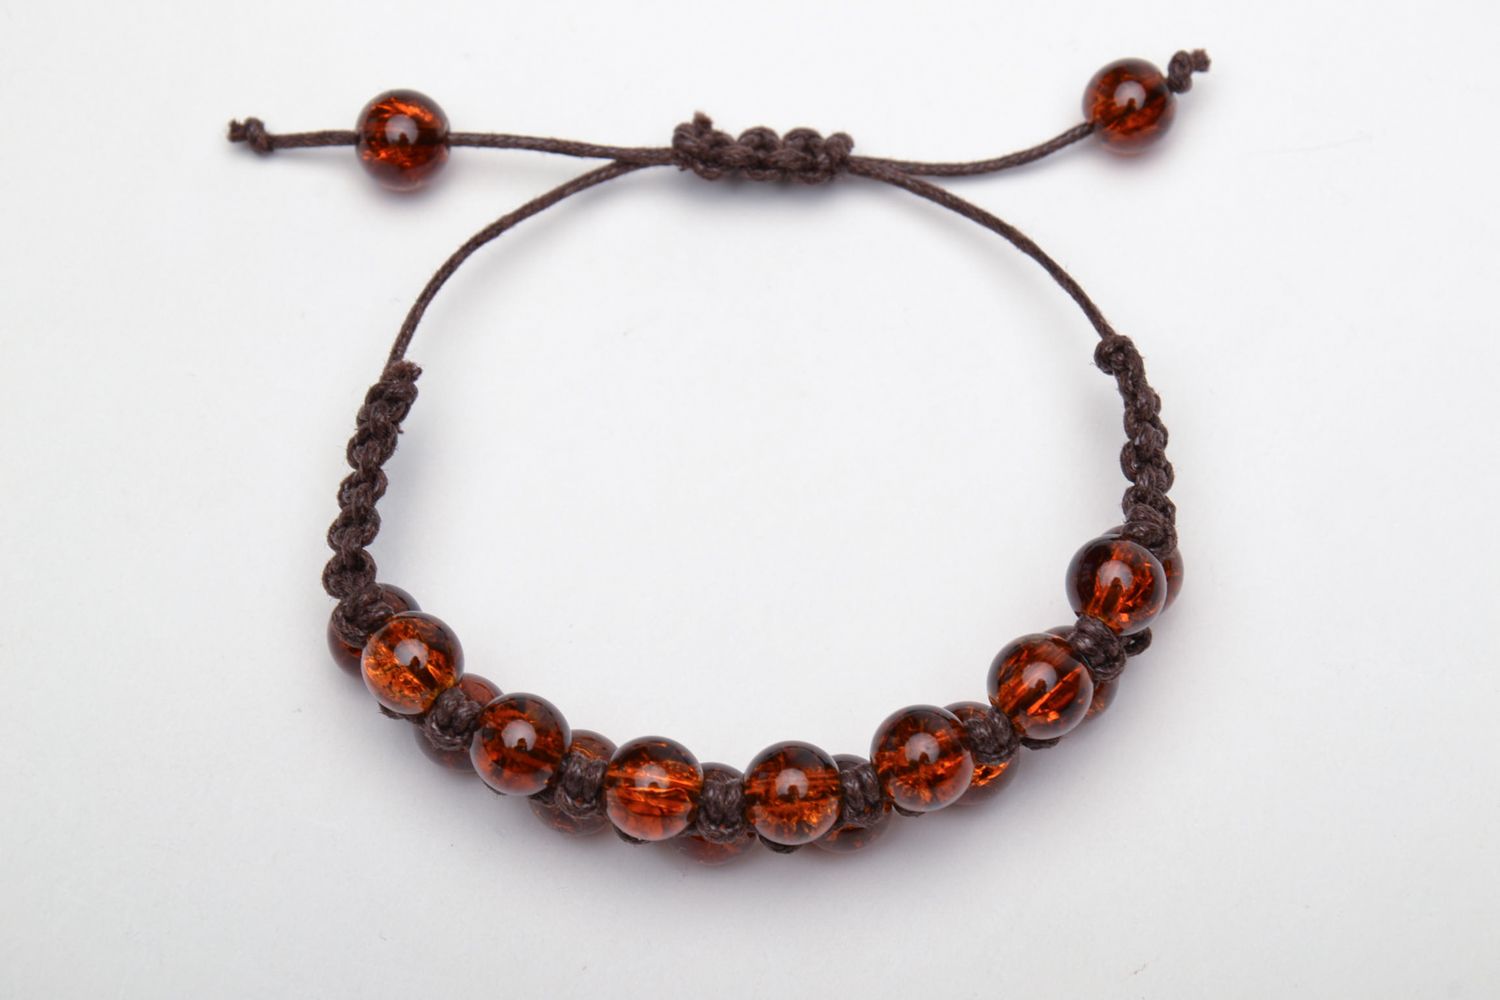 Wrist bracelet made of amber-like beads photo 2